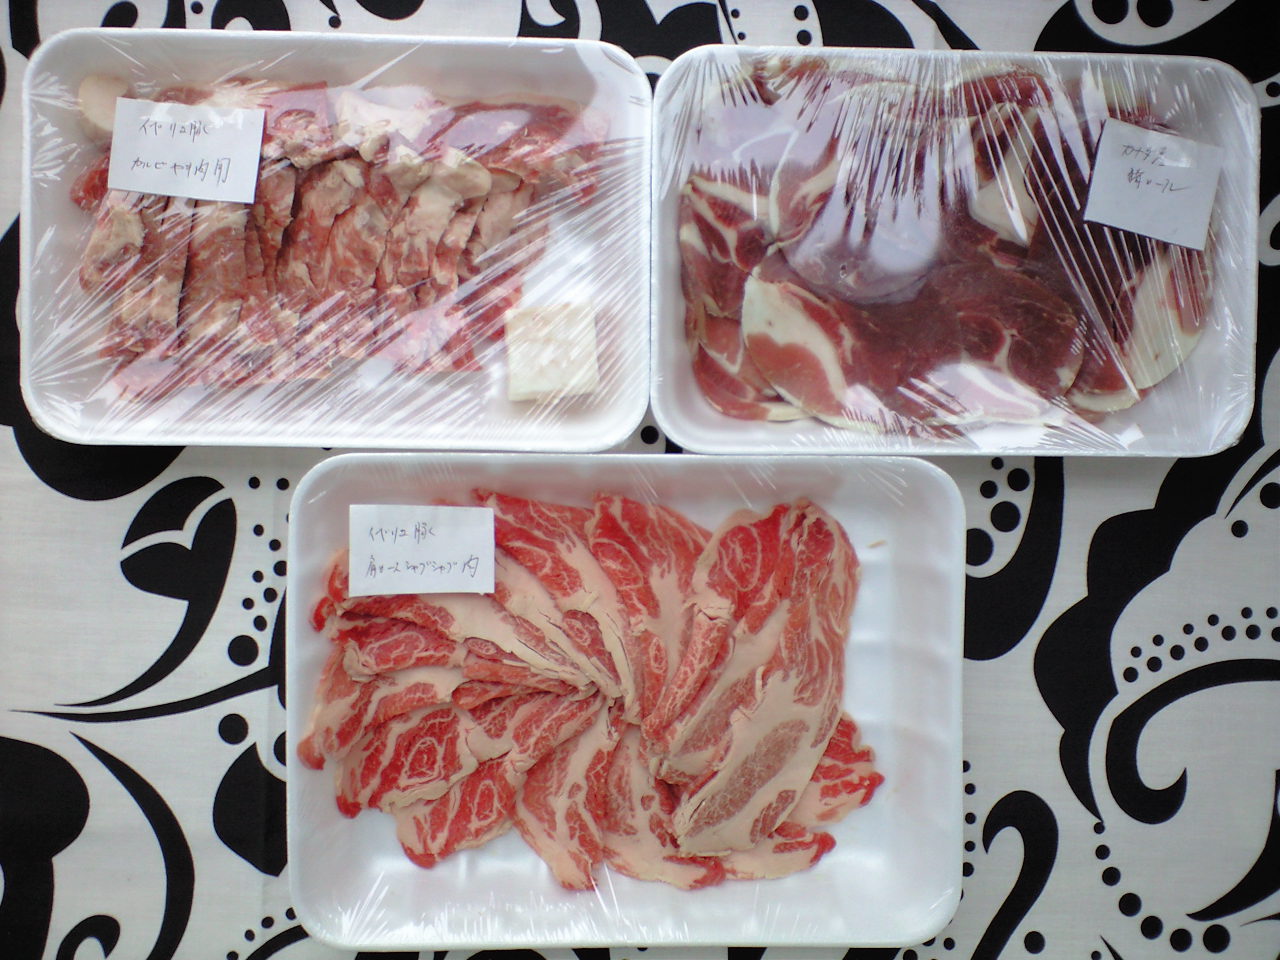 久本精肉店さんから3種類もお肉が届きましたよ！